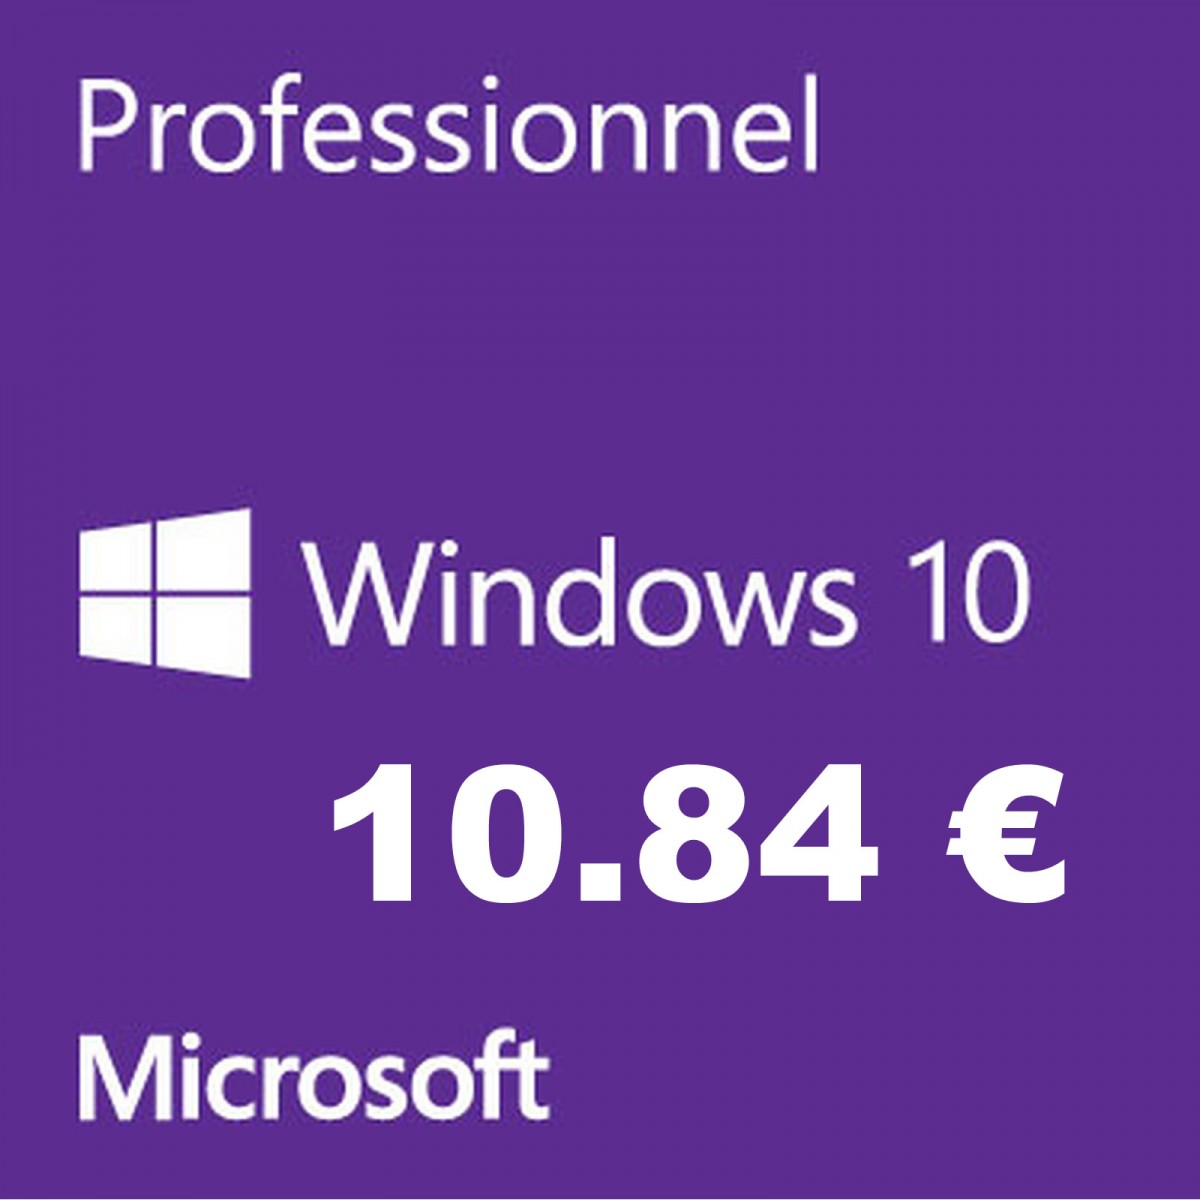 Microsoft Windows 10 Pro 11-Euros Office 2019 Professional 44-euros